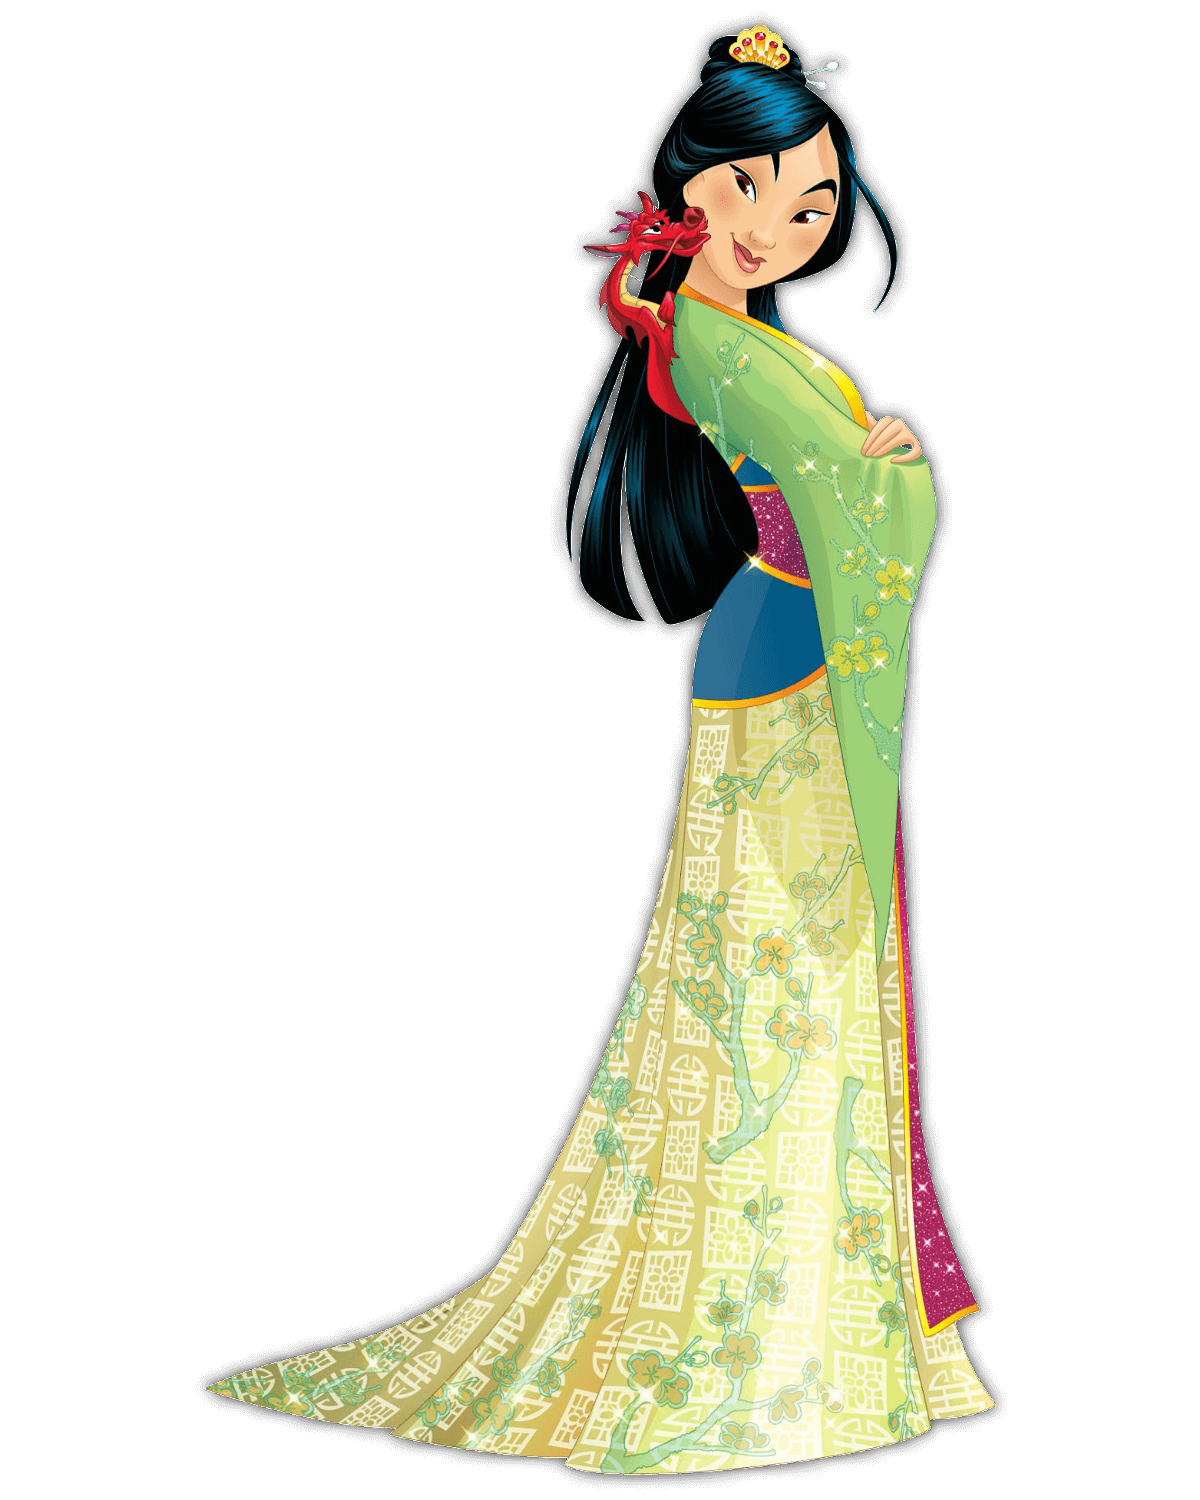 Disney Prinzessin Mulan in einem eleganten, bodelangen Kleid in grün-gelber Farbe und blauen Applikationen